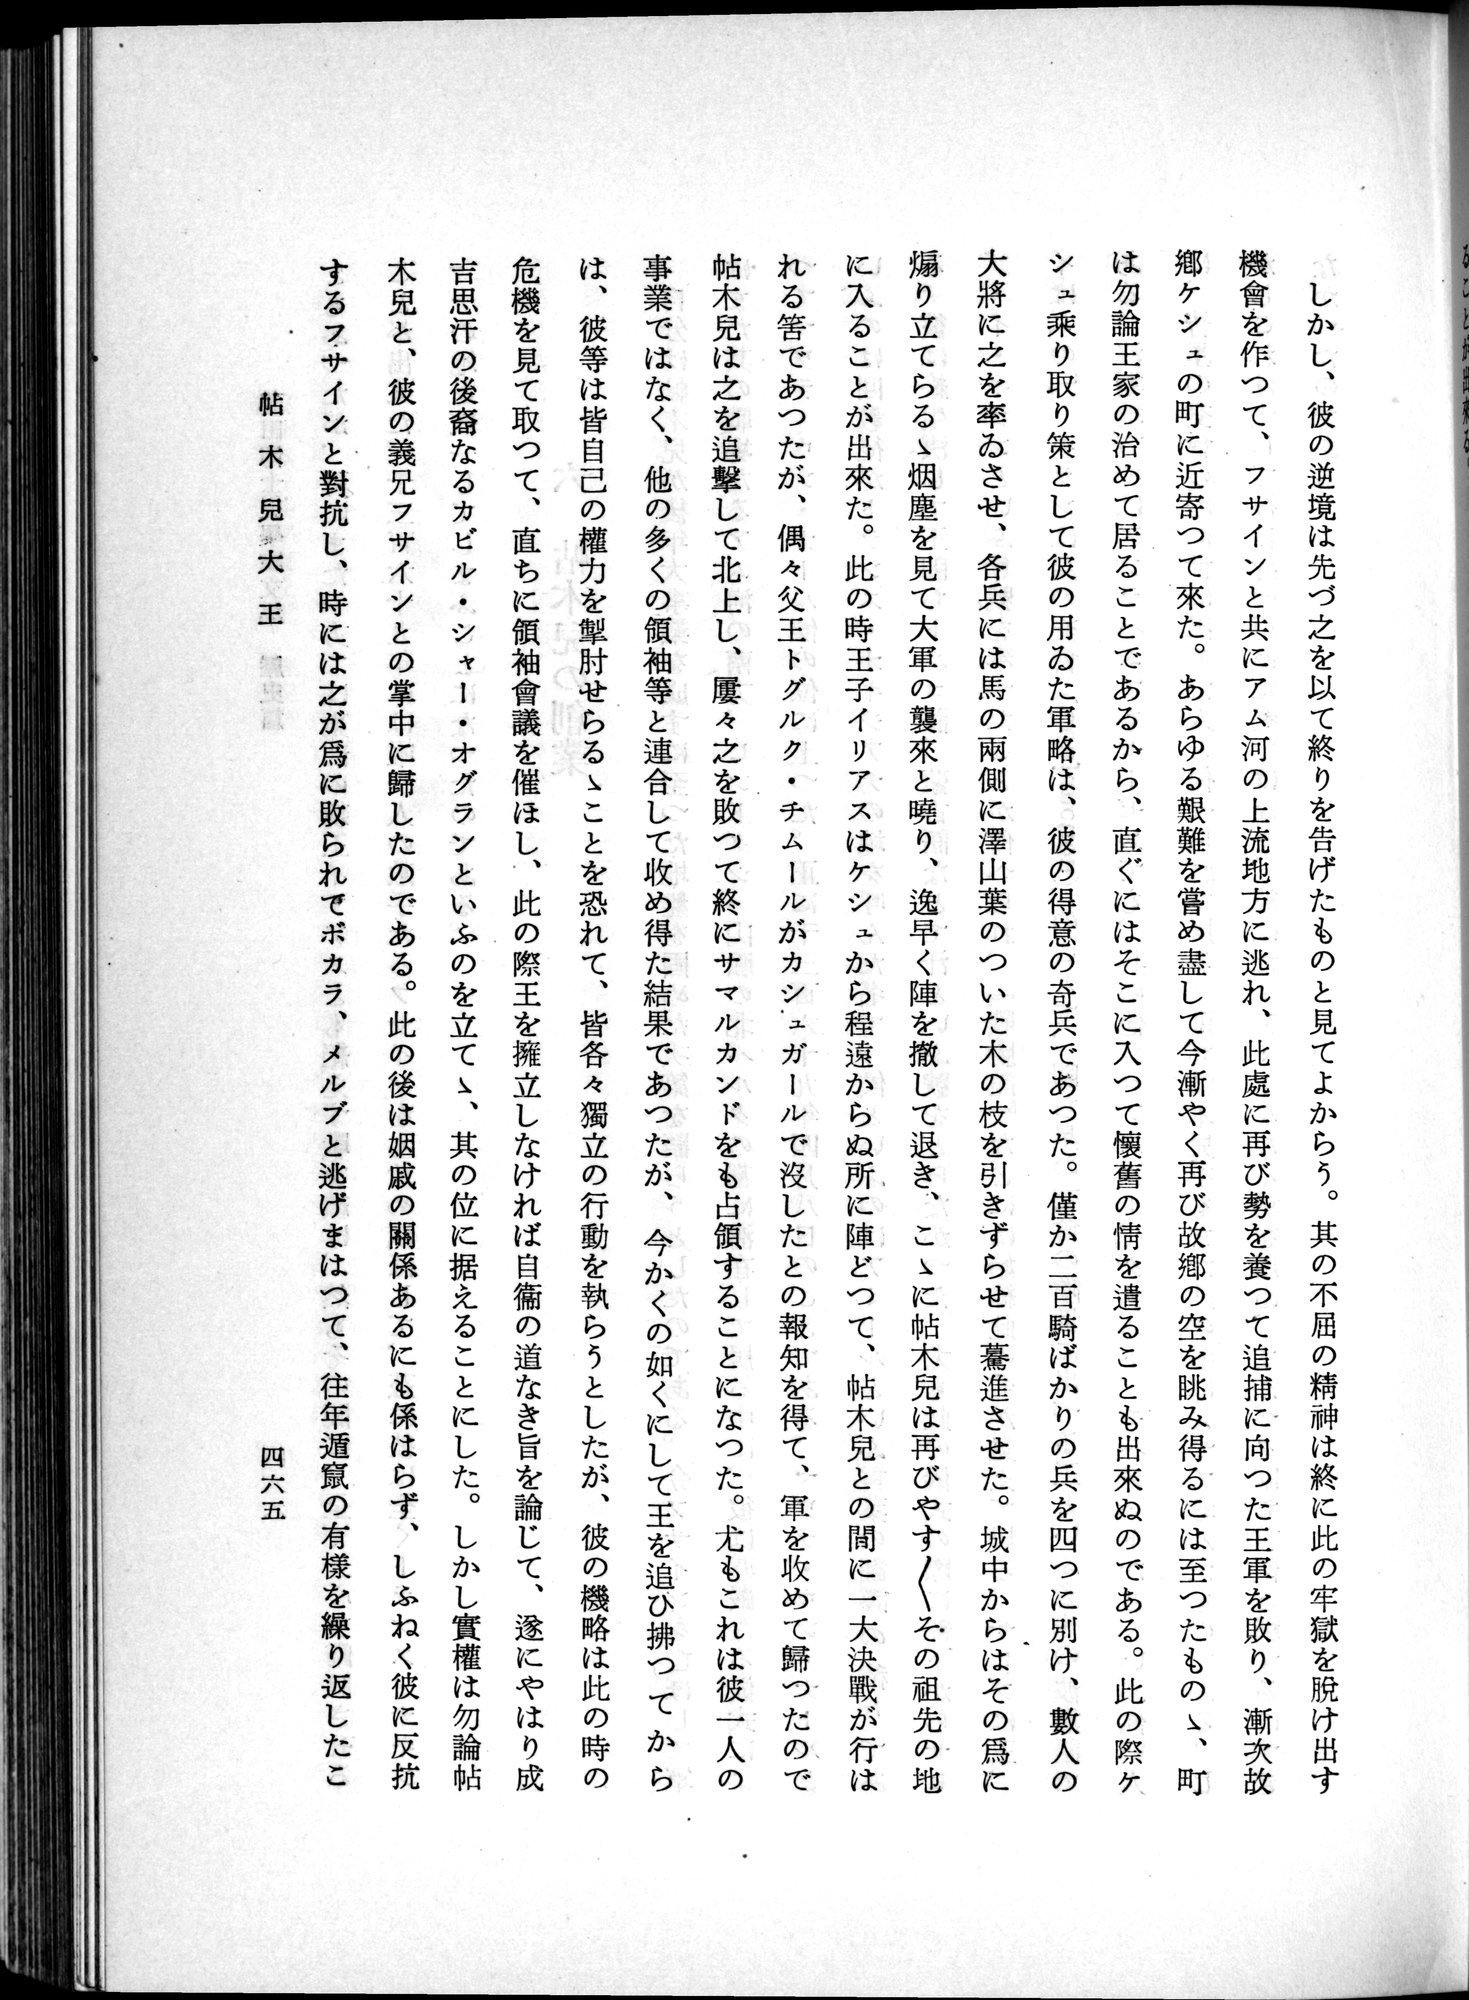 羽田博士史学論文集 : vol.1 / Page 503 (Grayscale High Resolution Image)